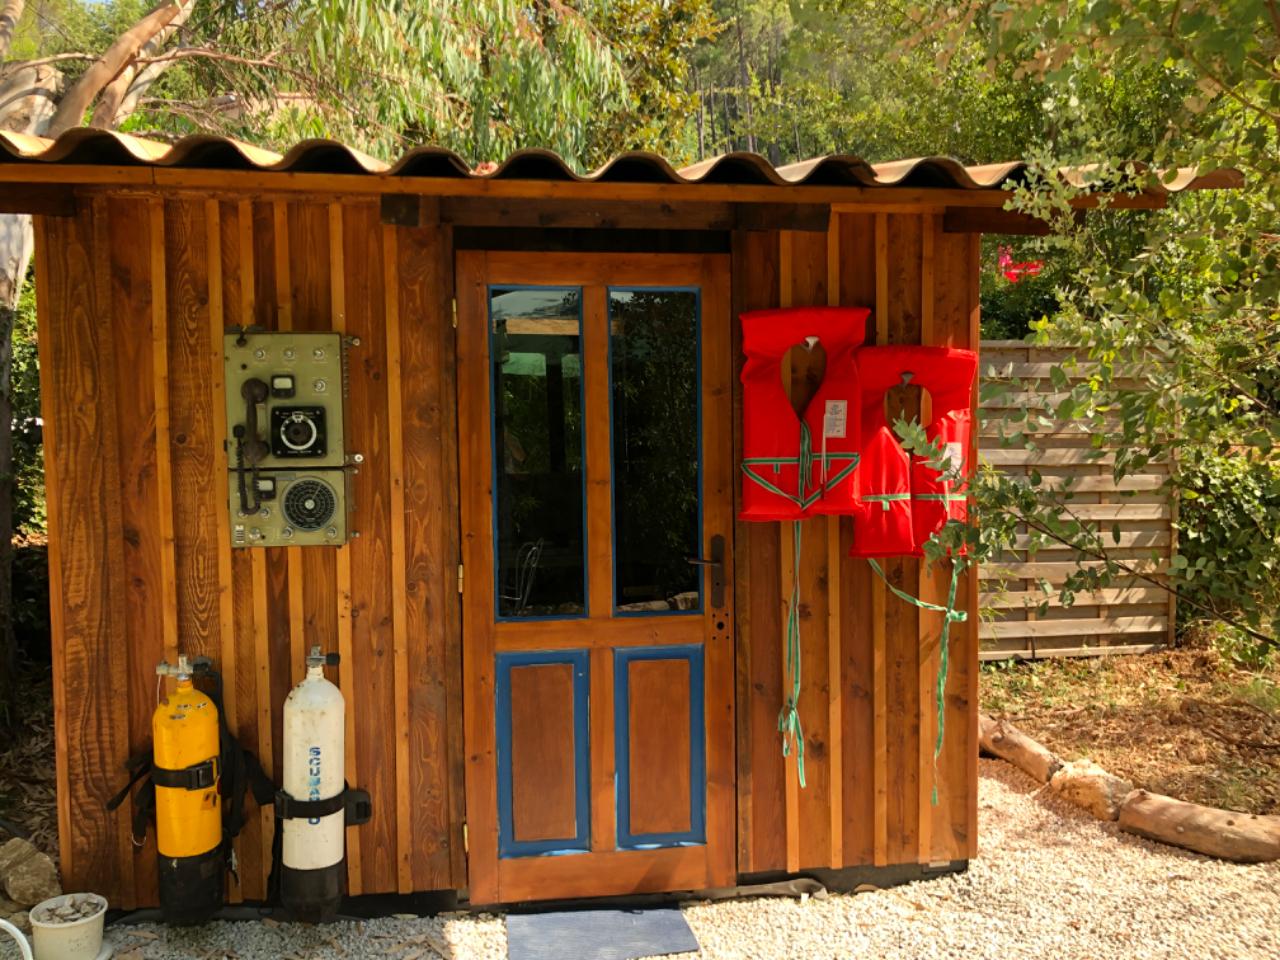 Logement GreenGo: Gîte original et cosy aménagé dans un grand chalutier en bois, pour un séjour surprenant tout confor - Image 11